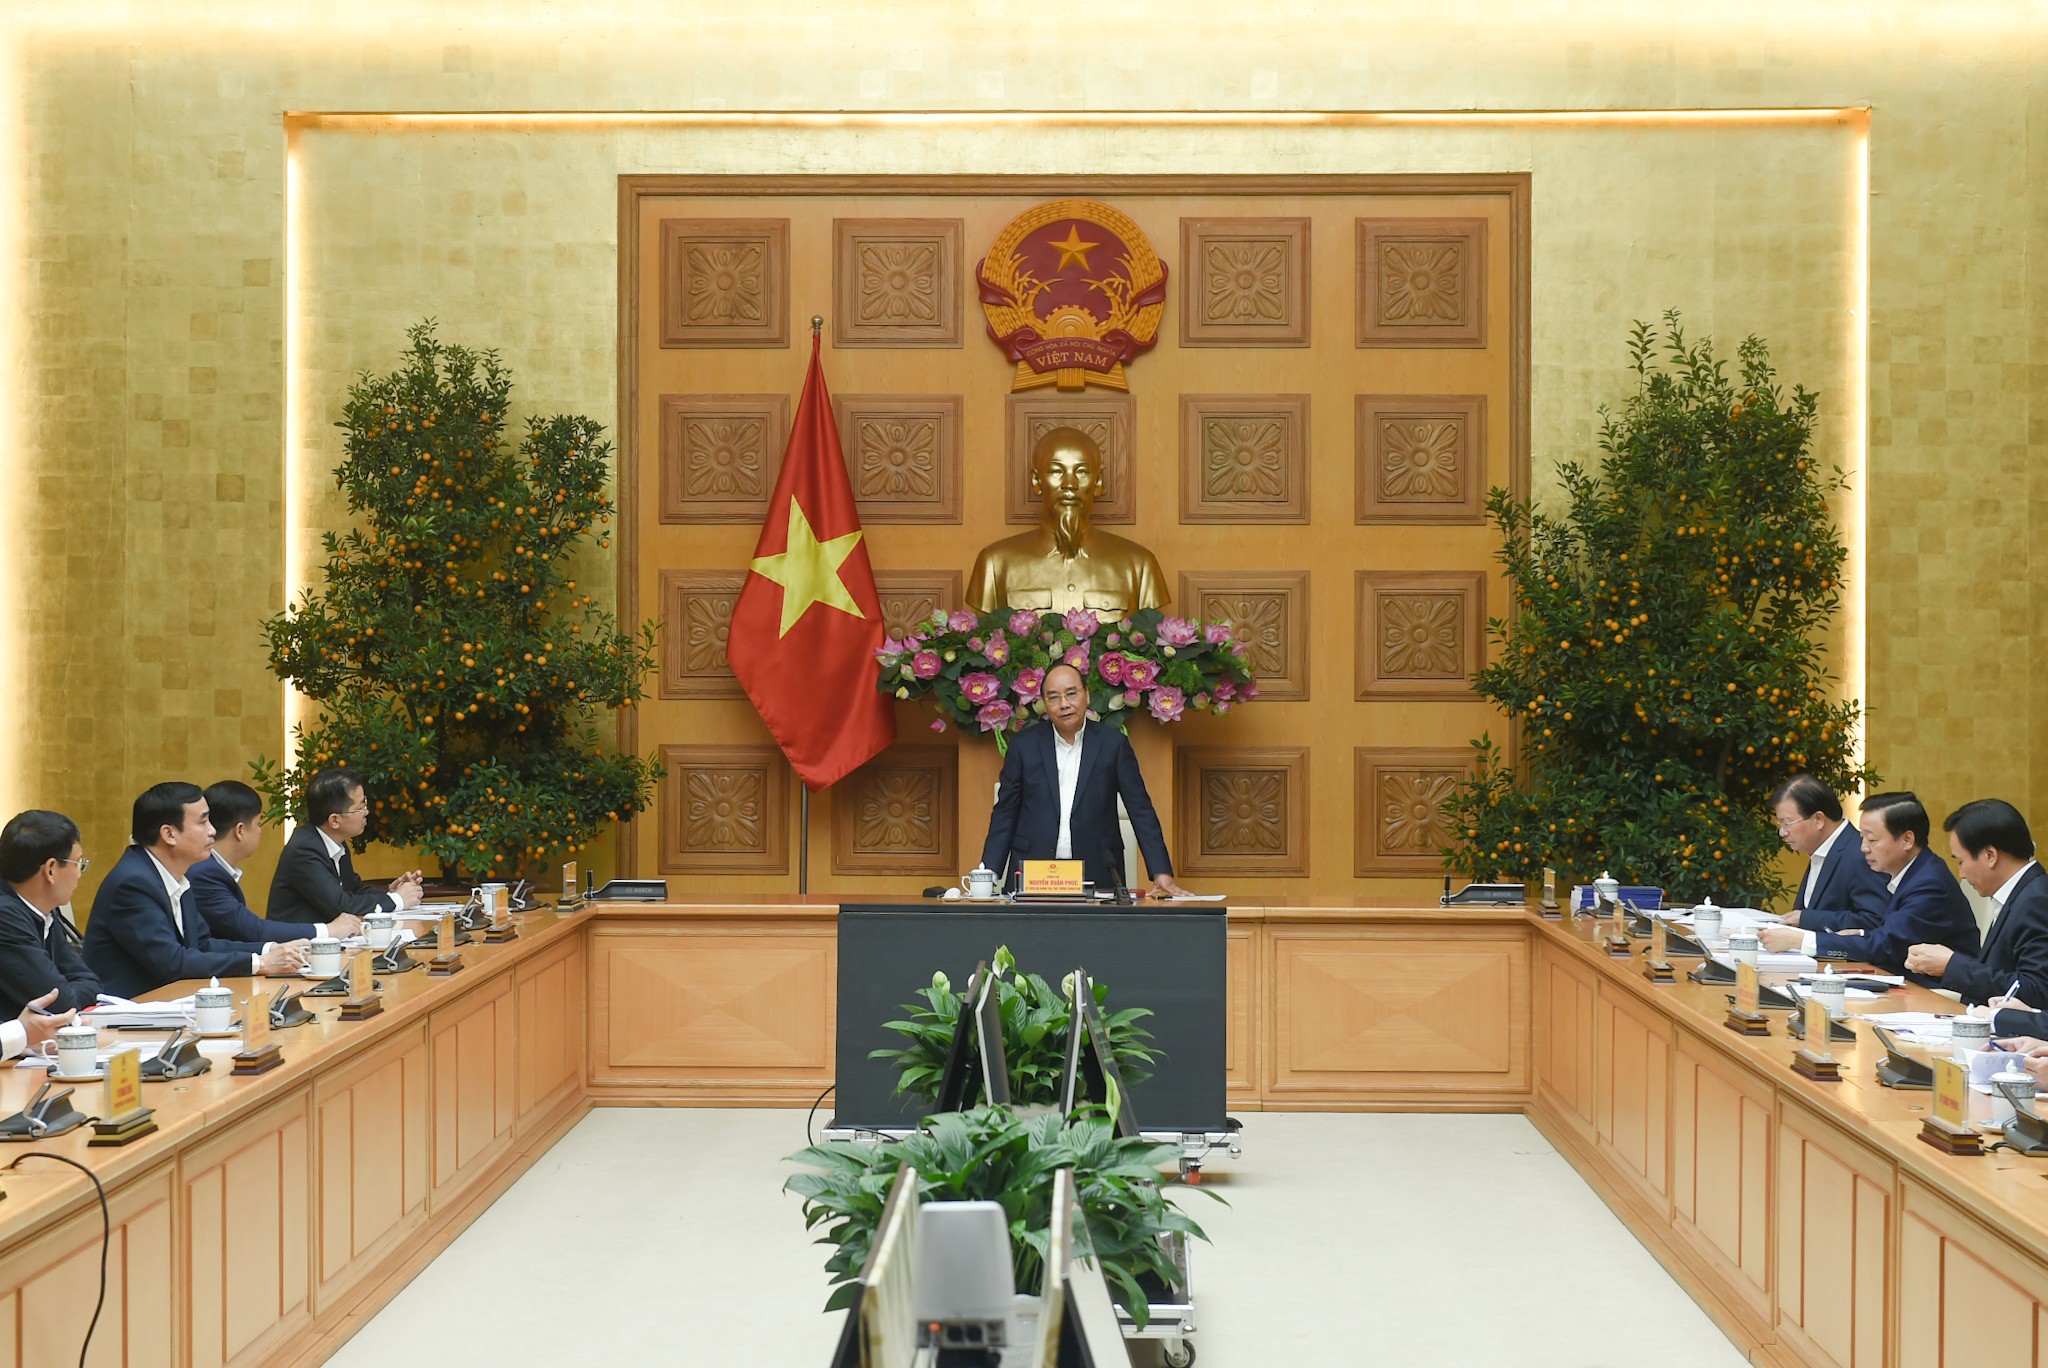 Thủ tướng lưu ý Đà Nẵng phấn đấu phát triển theo hướng thành phố loại đặc biệt